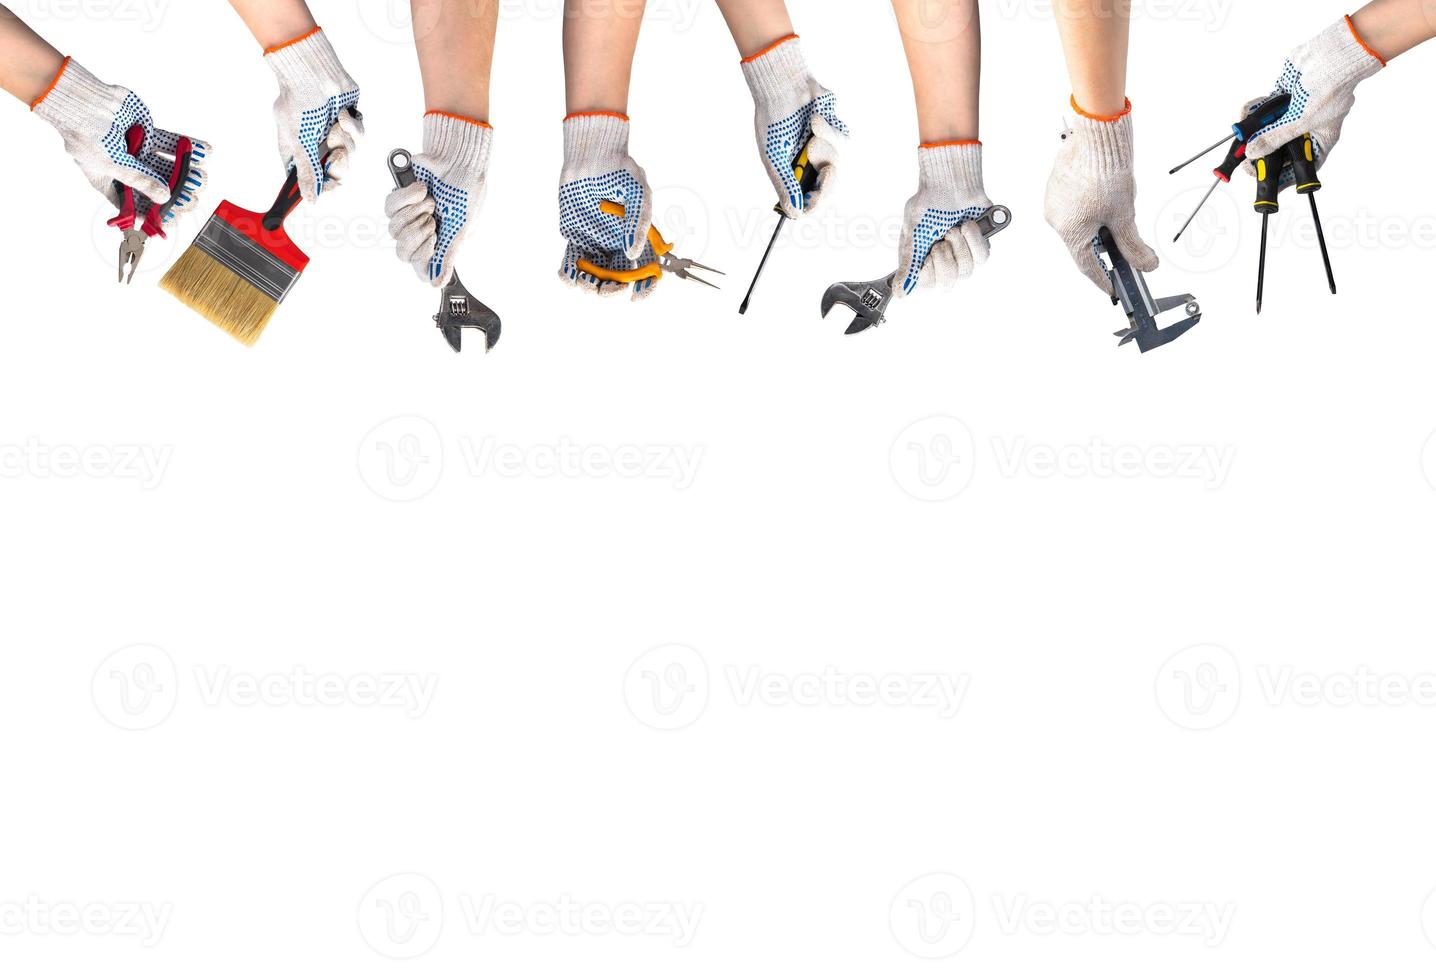 concepto de feliz día del trabajo. las manos en guantes de trabajo sostienen herramientas para reparación y construcción. llave inglesa, destornillador, pincel, alicates sobre fondo blanco. foto